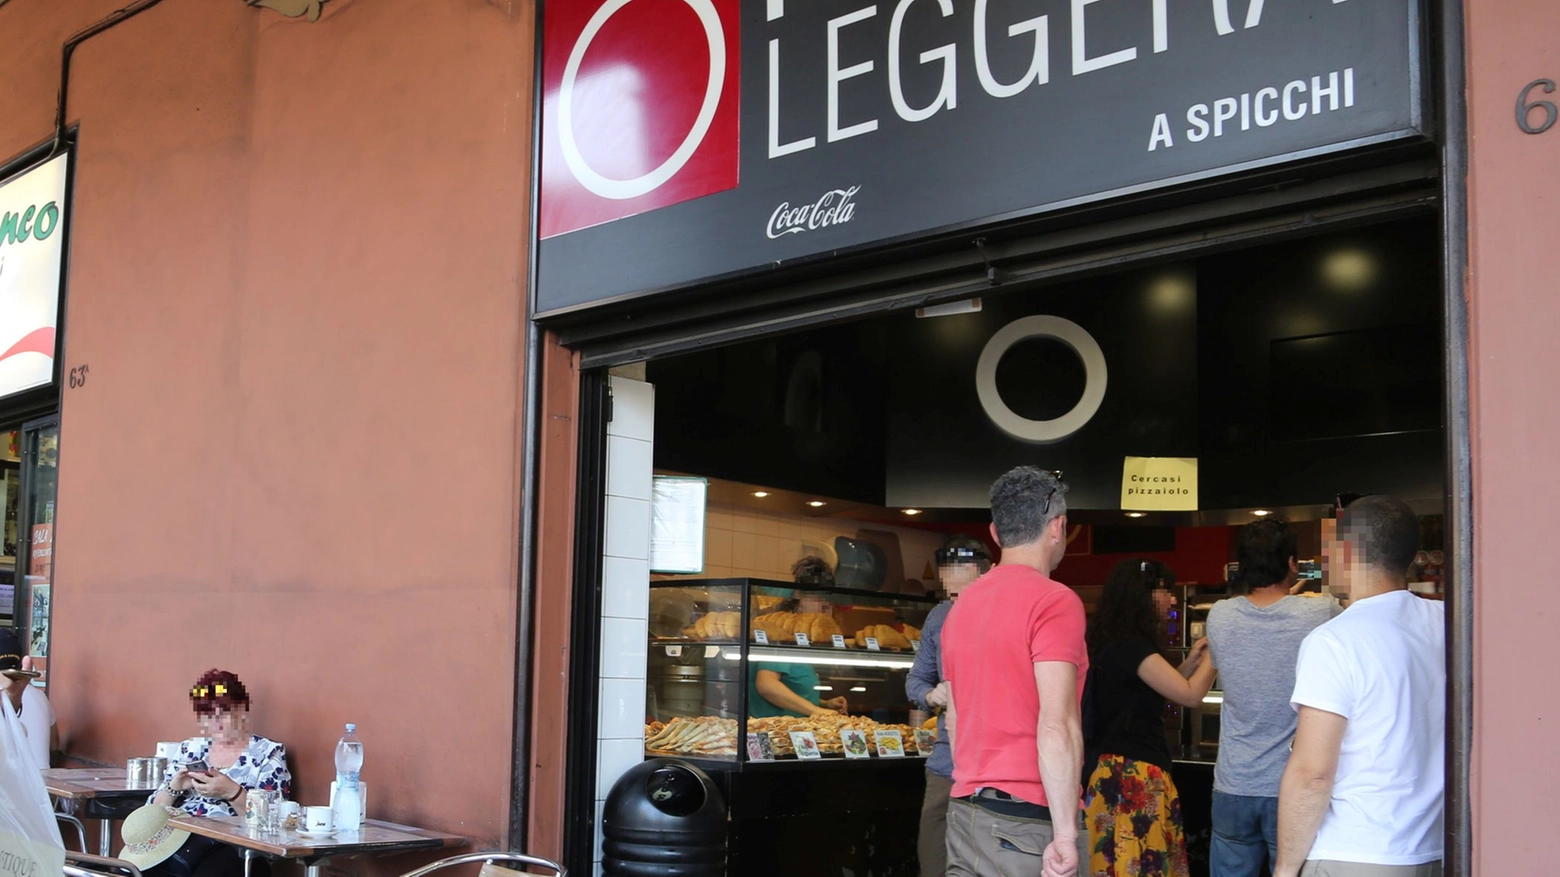 Bologna: la pizzeria Pizza Leggera, dove il cameriere è stato aggredito (FotoSchicchi)